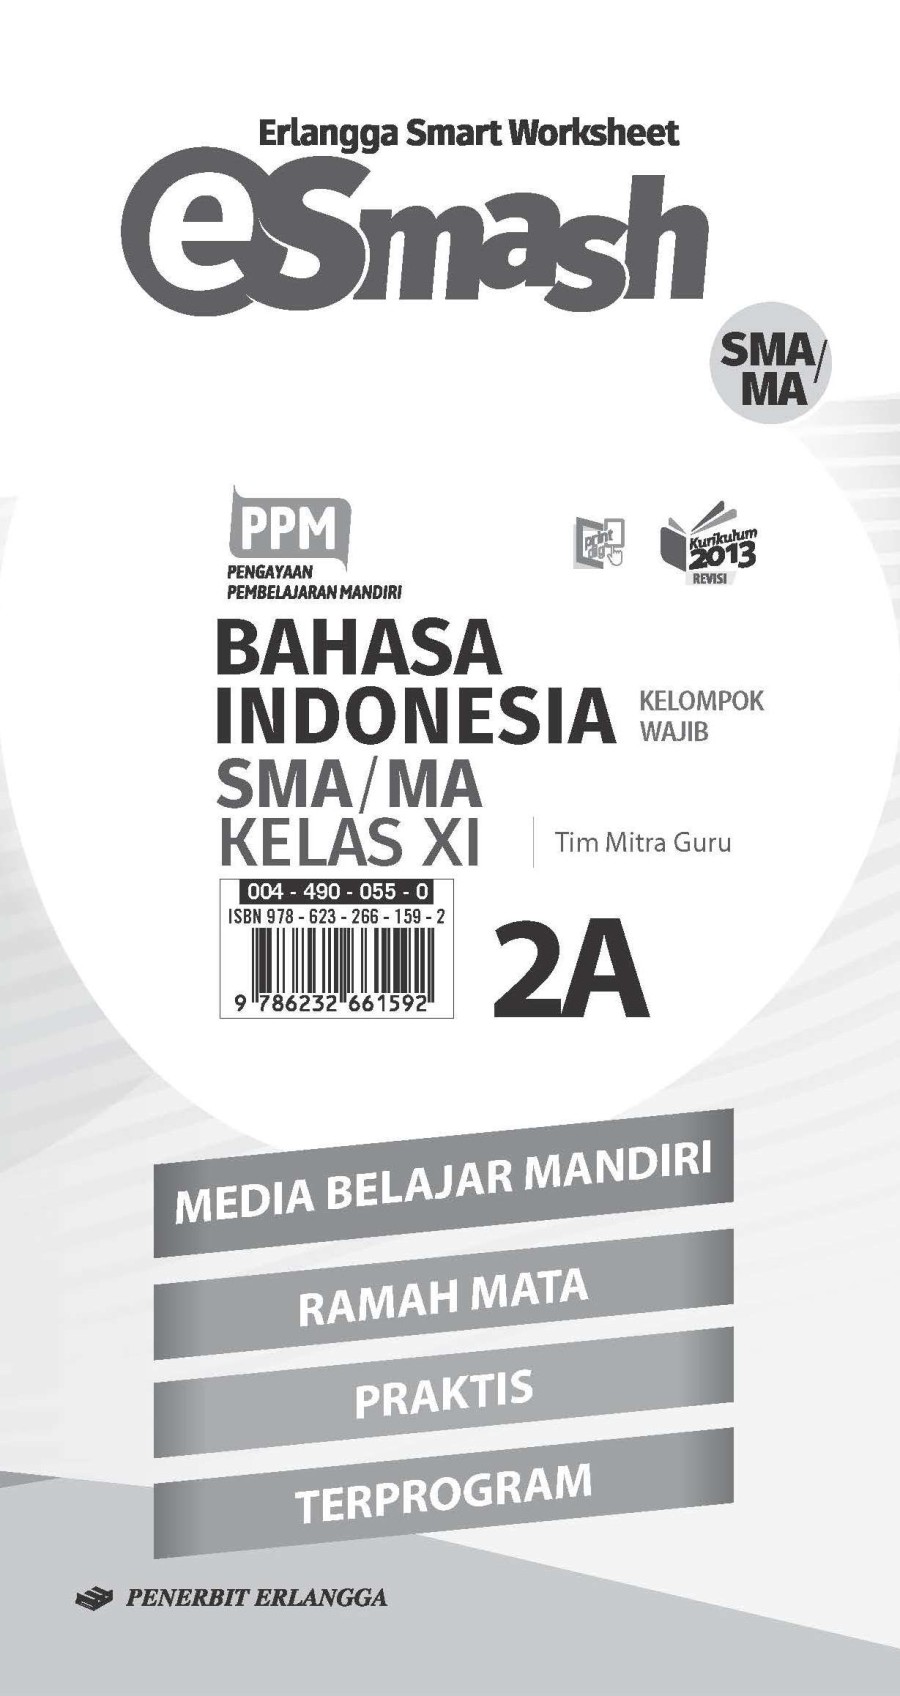 e-smash-b-indonesia-sma-ma-jl-2a-k13n